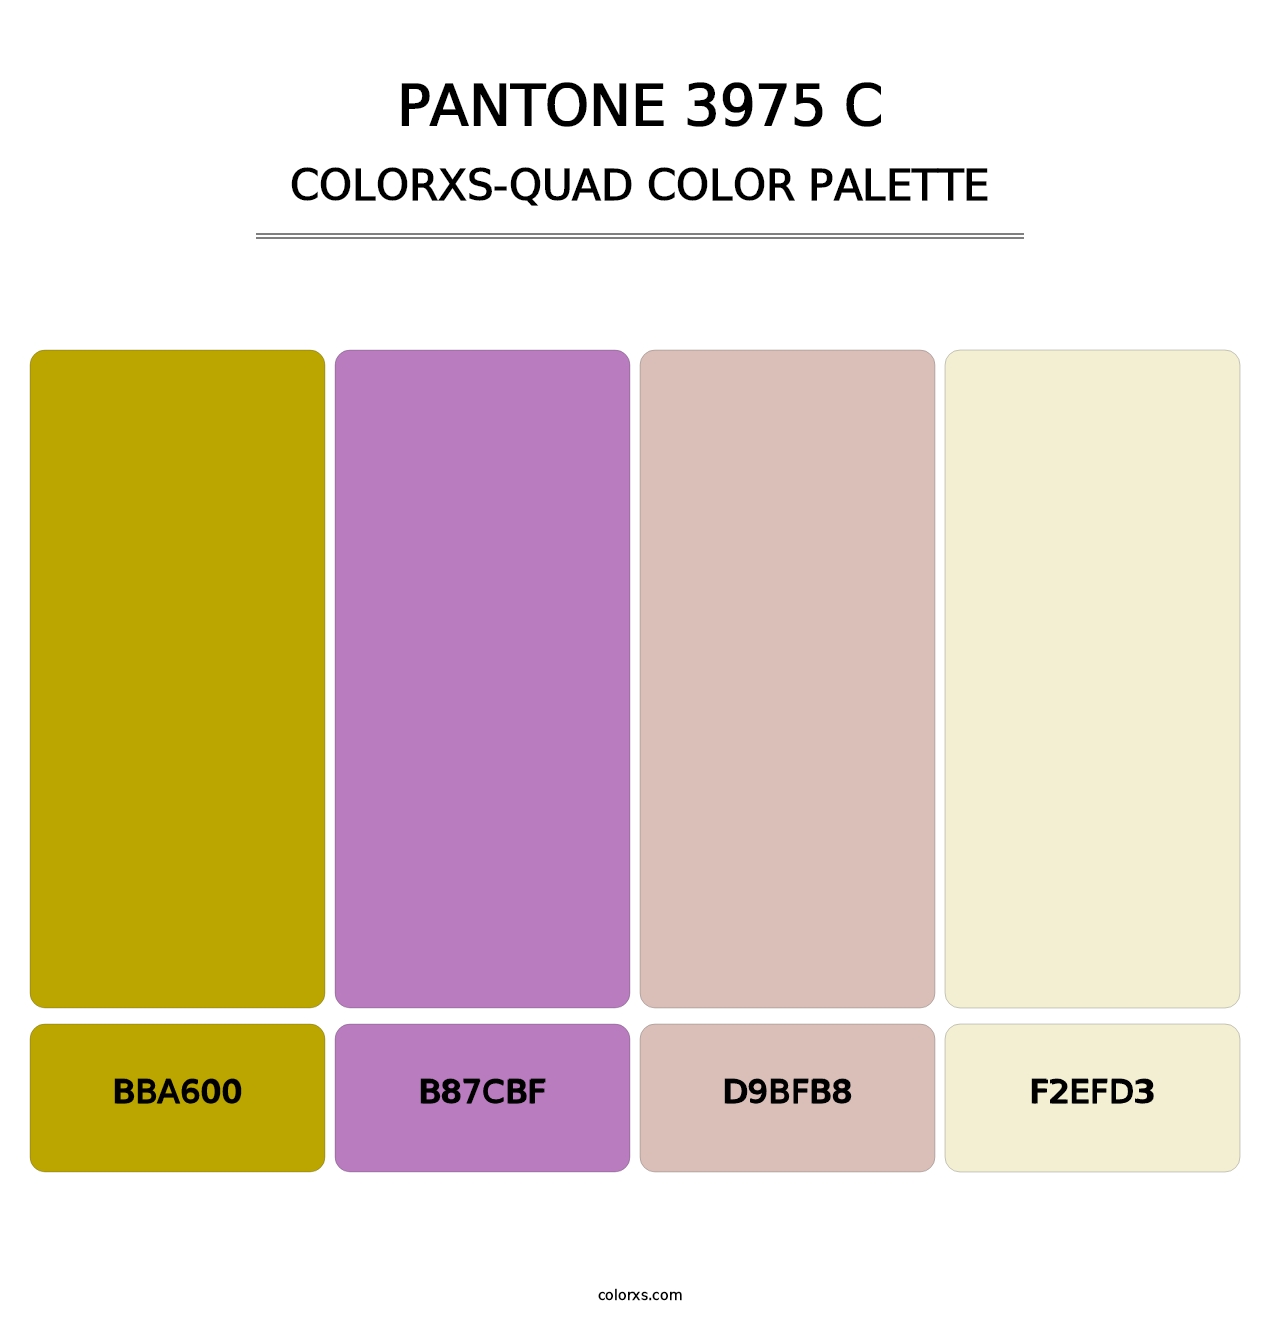 PANTONE 3975 C - Colorxs Quad Palette